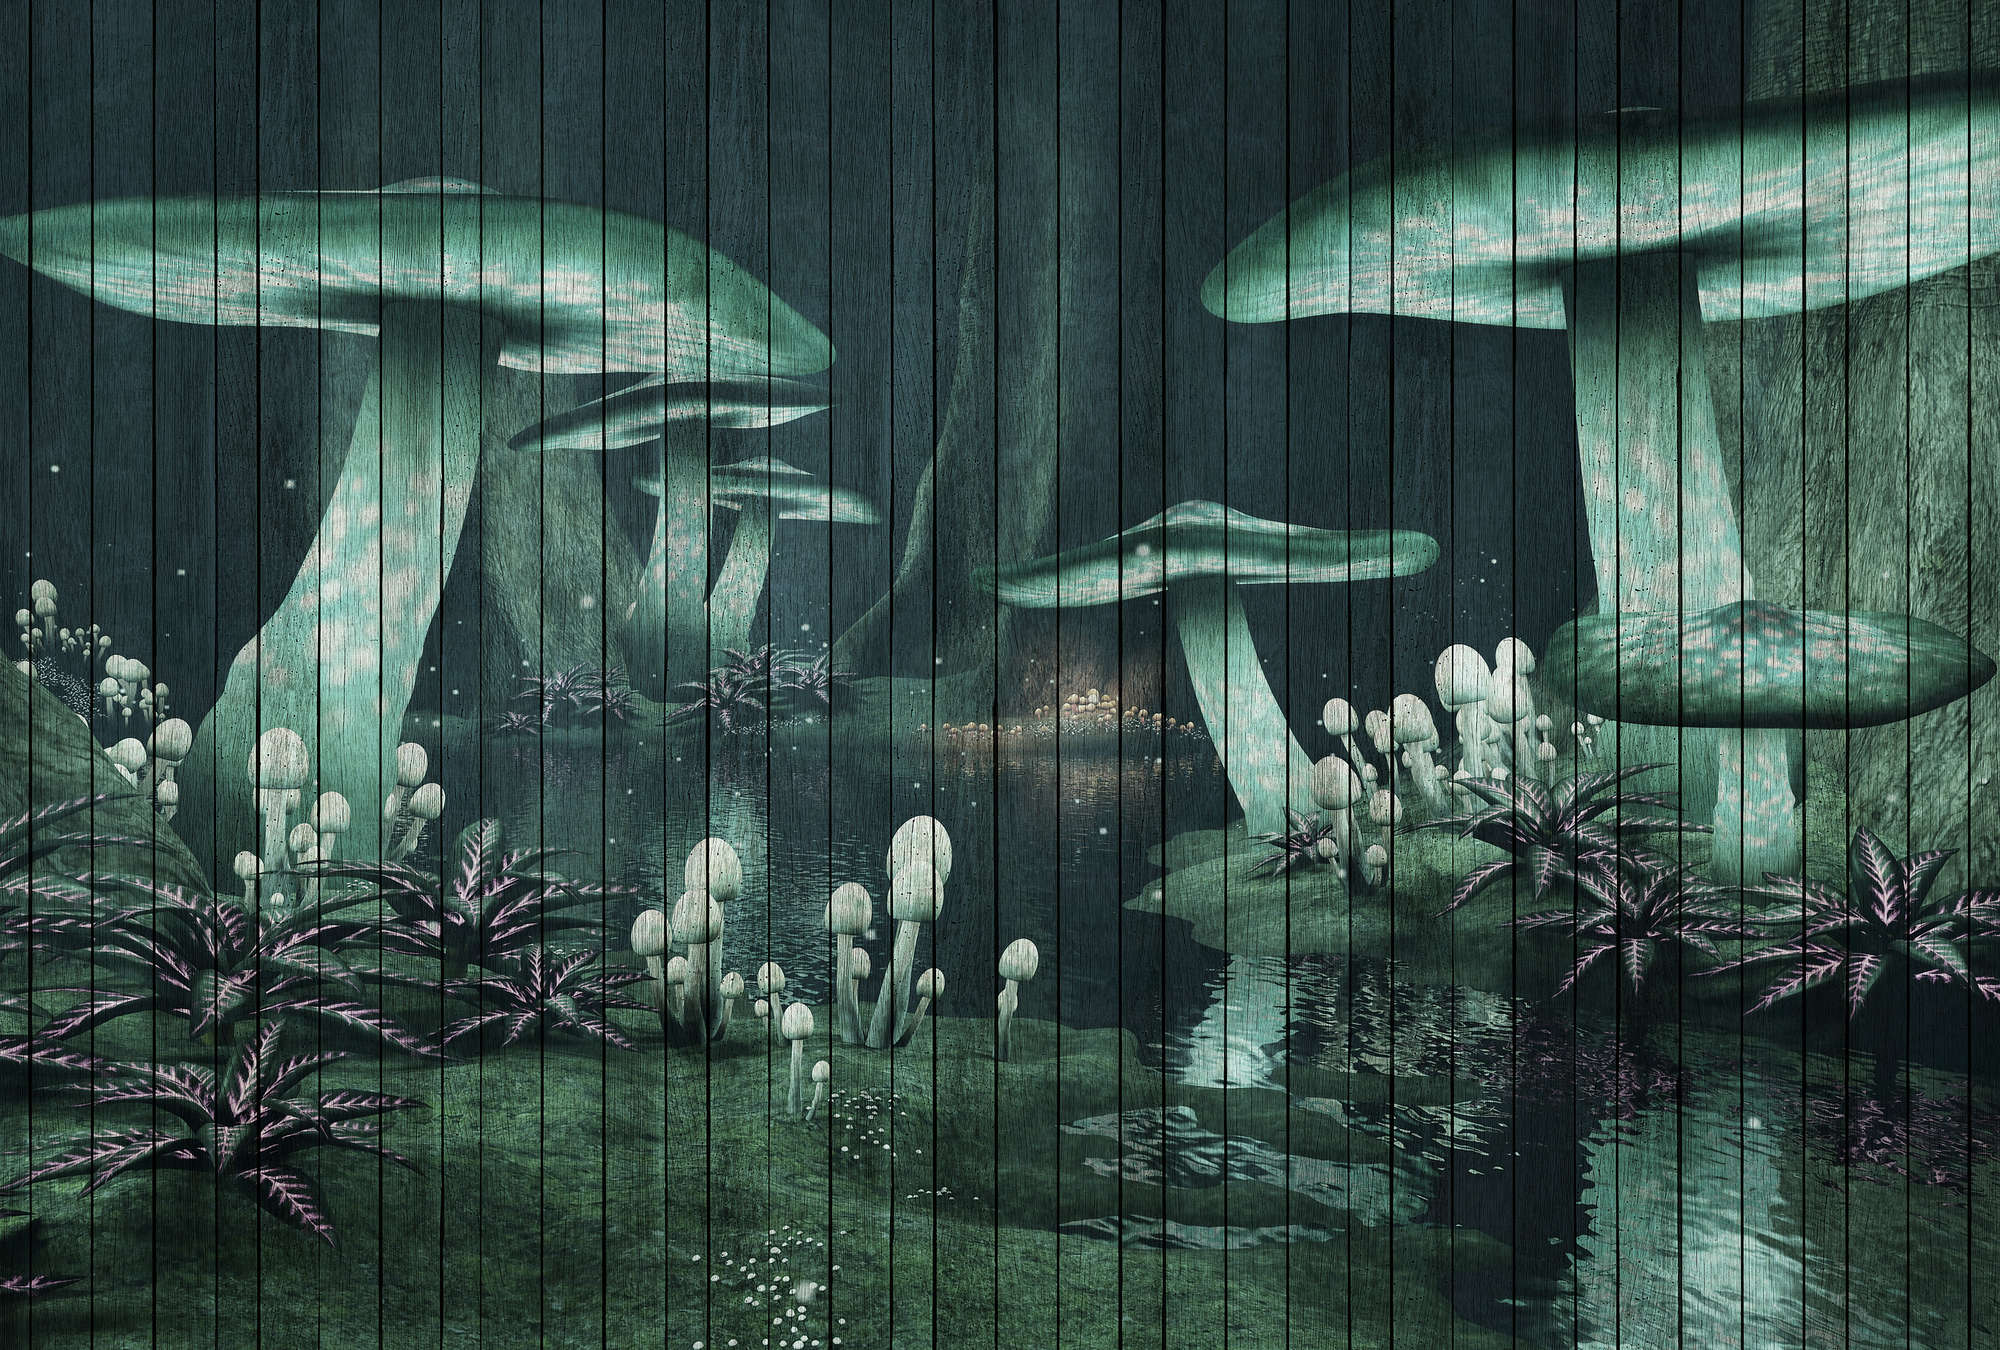             Fantasia 1 - carta da parati foresta incantata con aspetto legno - verde | madreperla liscia in pile
        